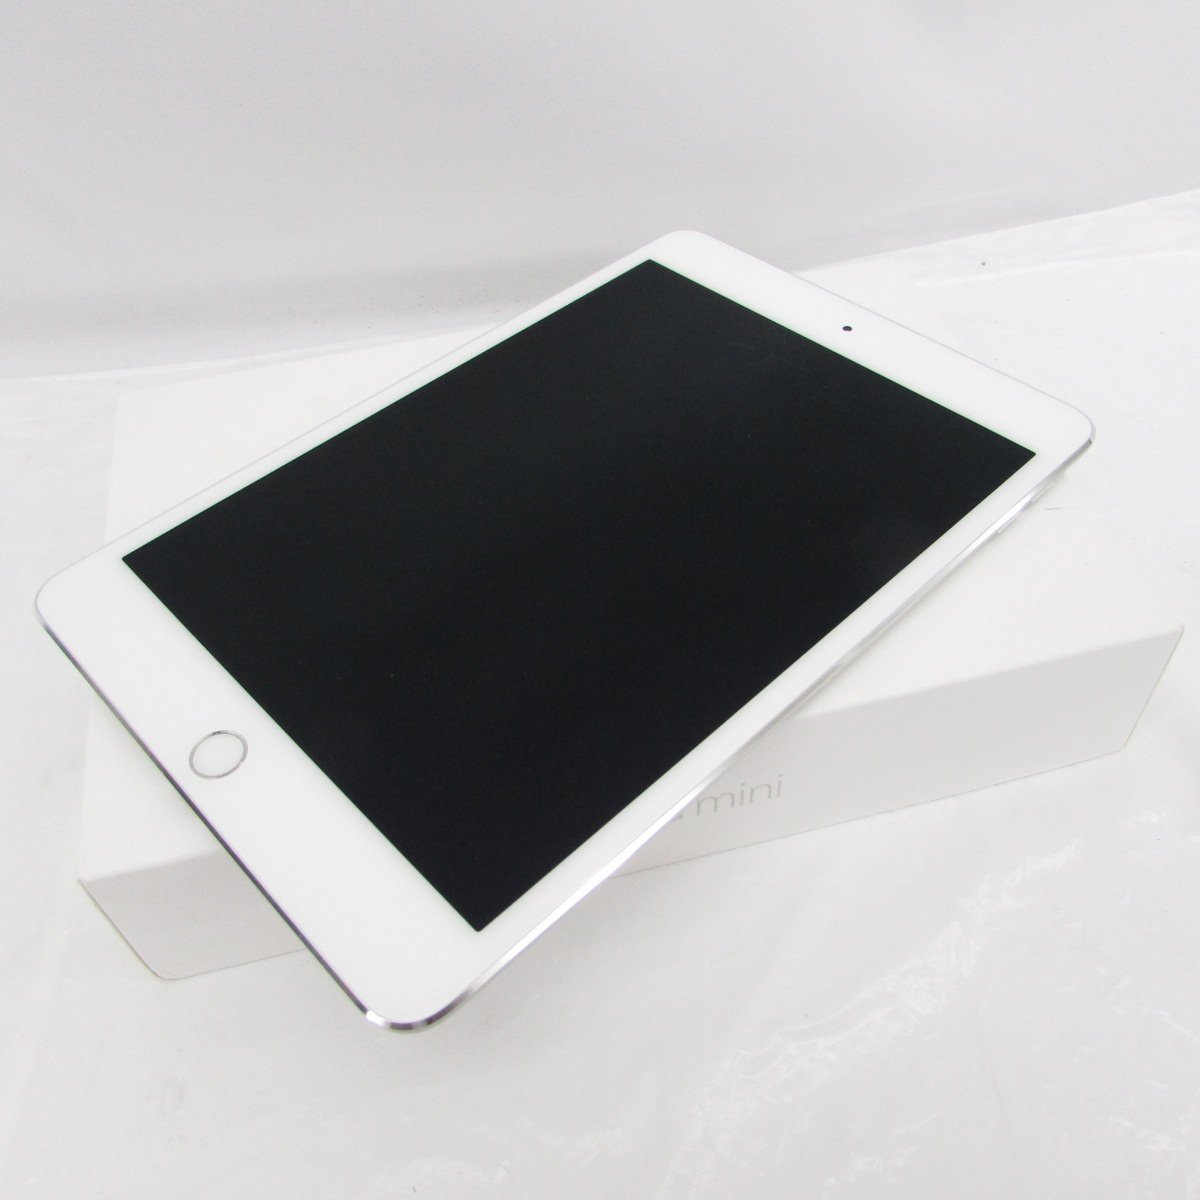 中古品】Apple アップル タブレット iPad mini 4 第4世代 Wi-Fiモデル